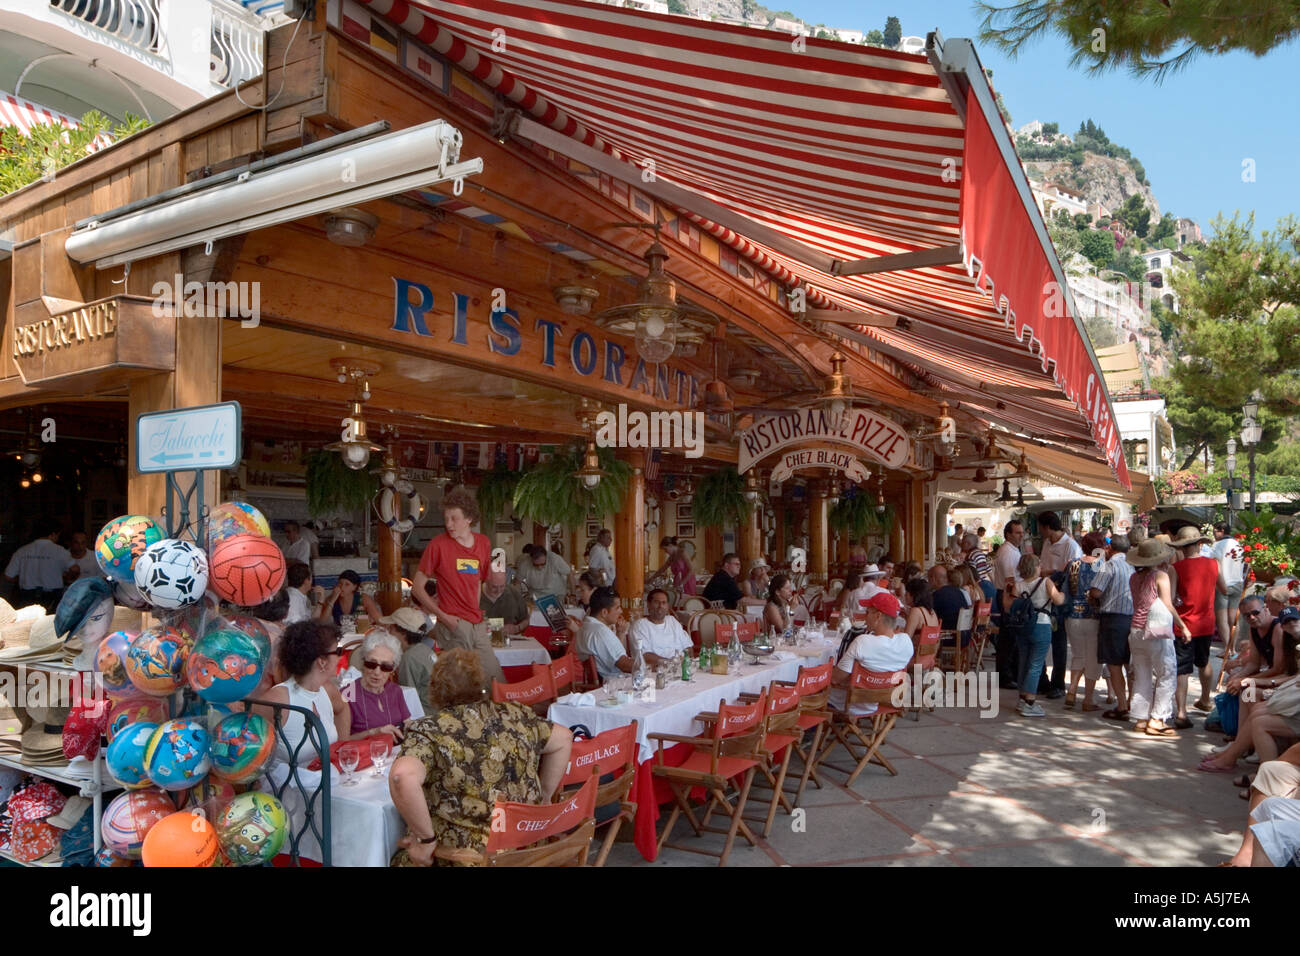 Am Strand Restaurant und Geschäfte, Positano, Amalfi-Küste (Costiera Amalfitana), neapolitanische Riviera, Italien Stockfoto